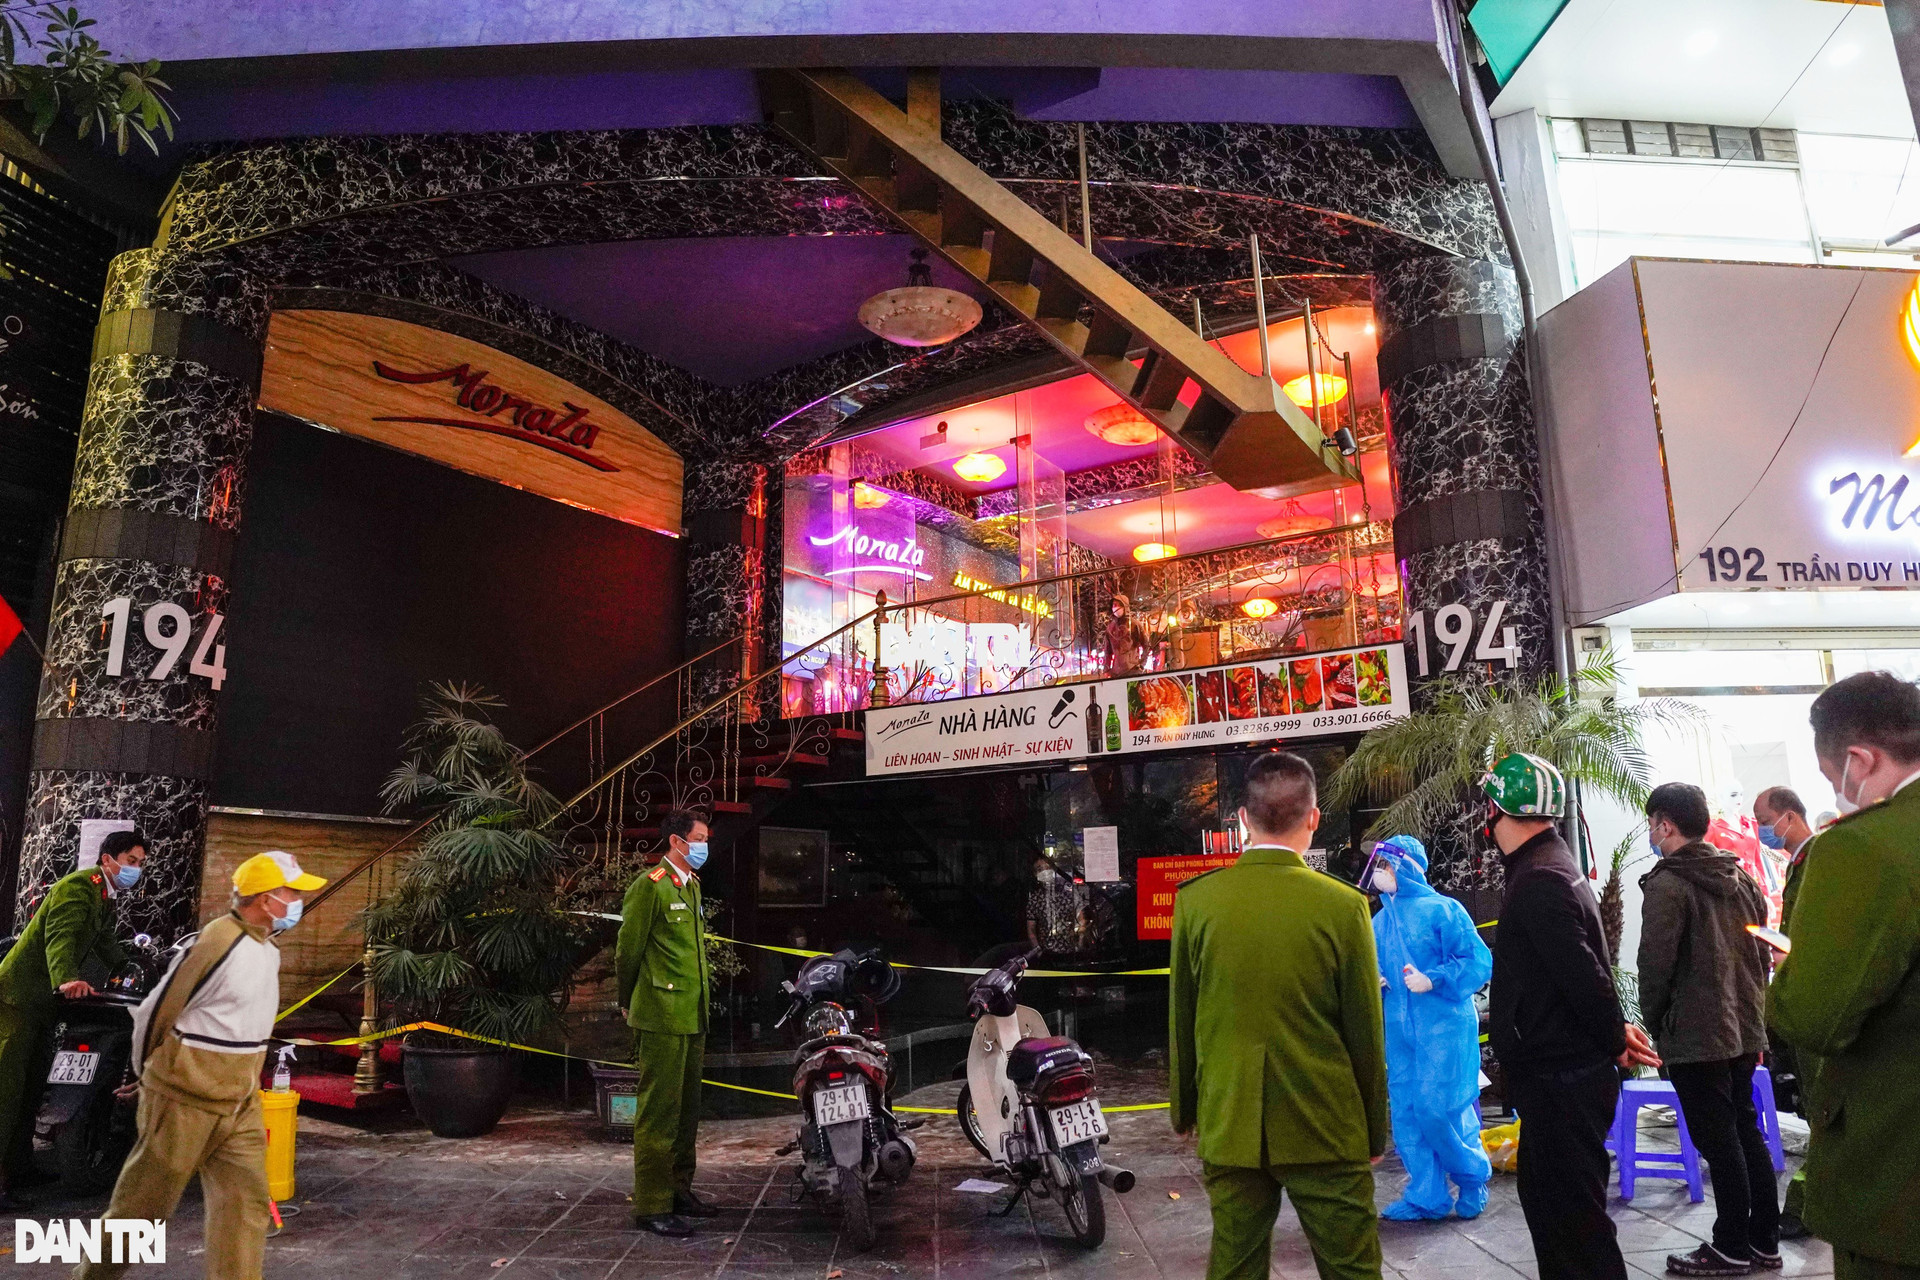 Hà Nội: 126 khách vẫn đang bị cách ly tại nhà hàng Monaza Trần Duy hưng - 1